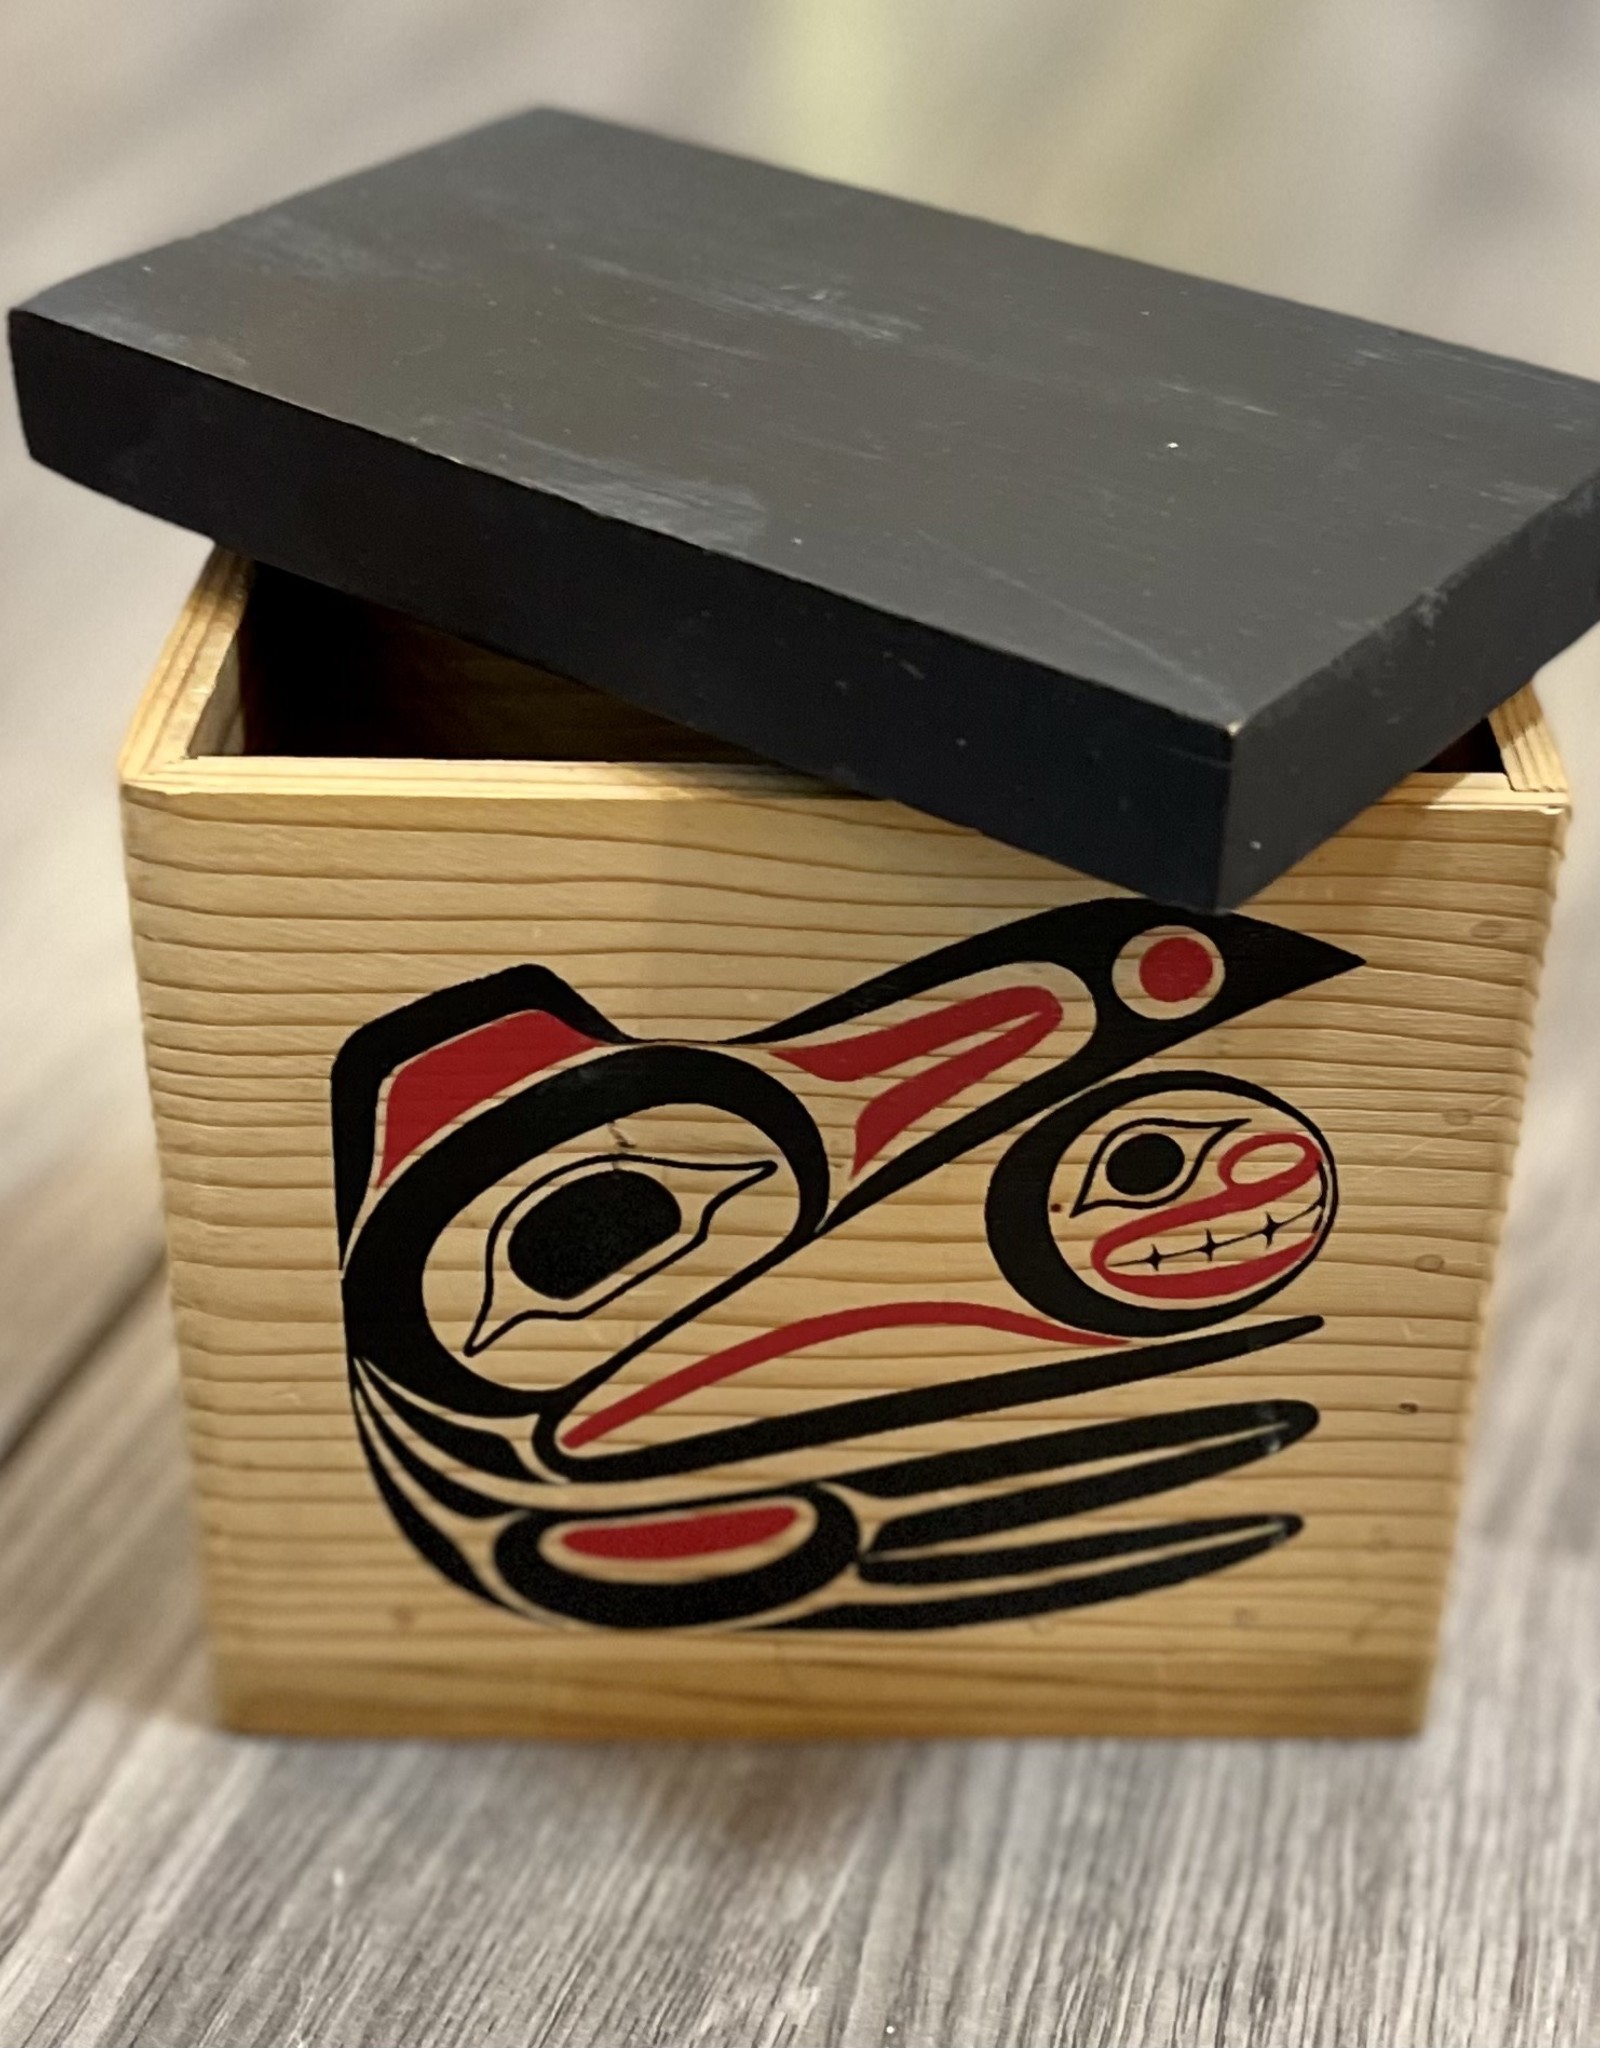 Aboriginal - Aboriginal decorated wooden box